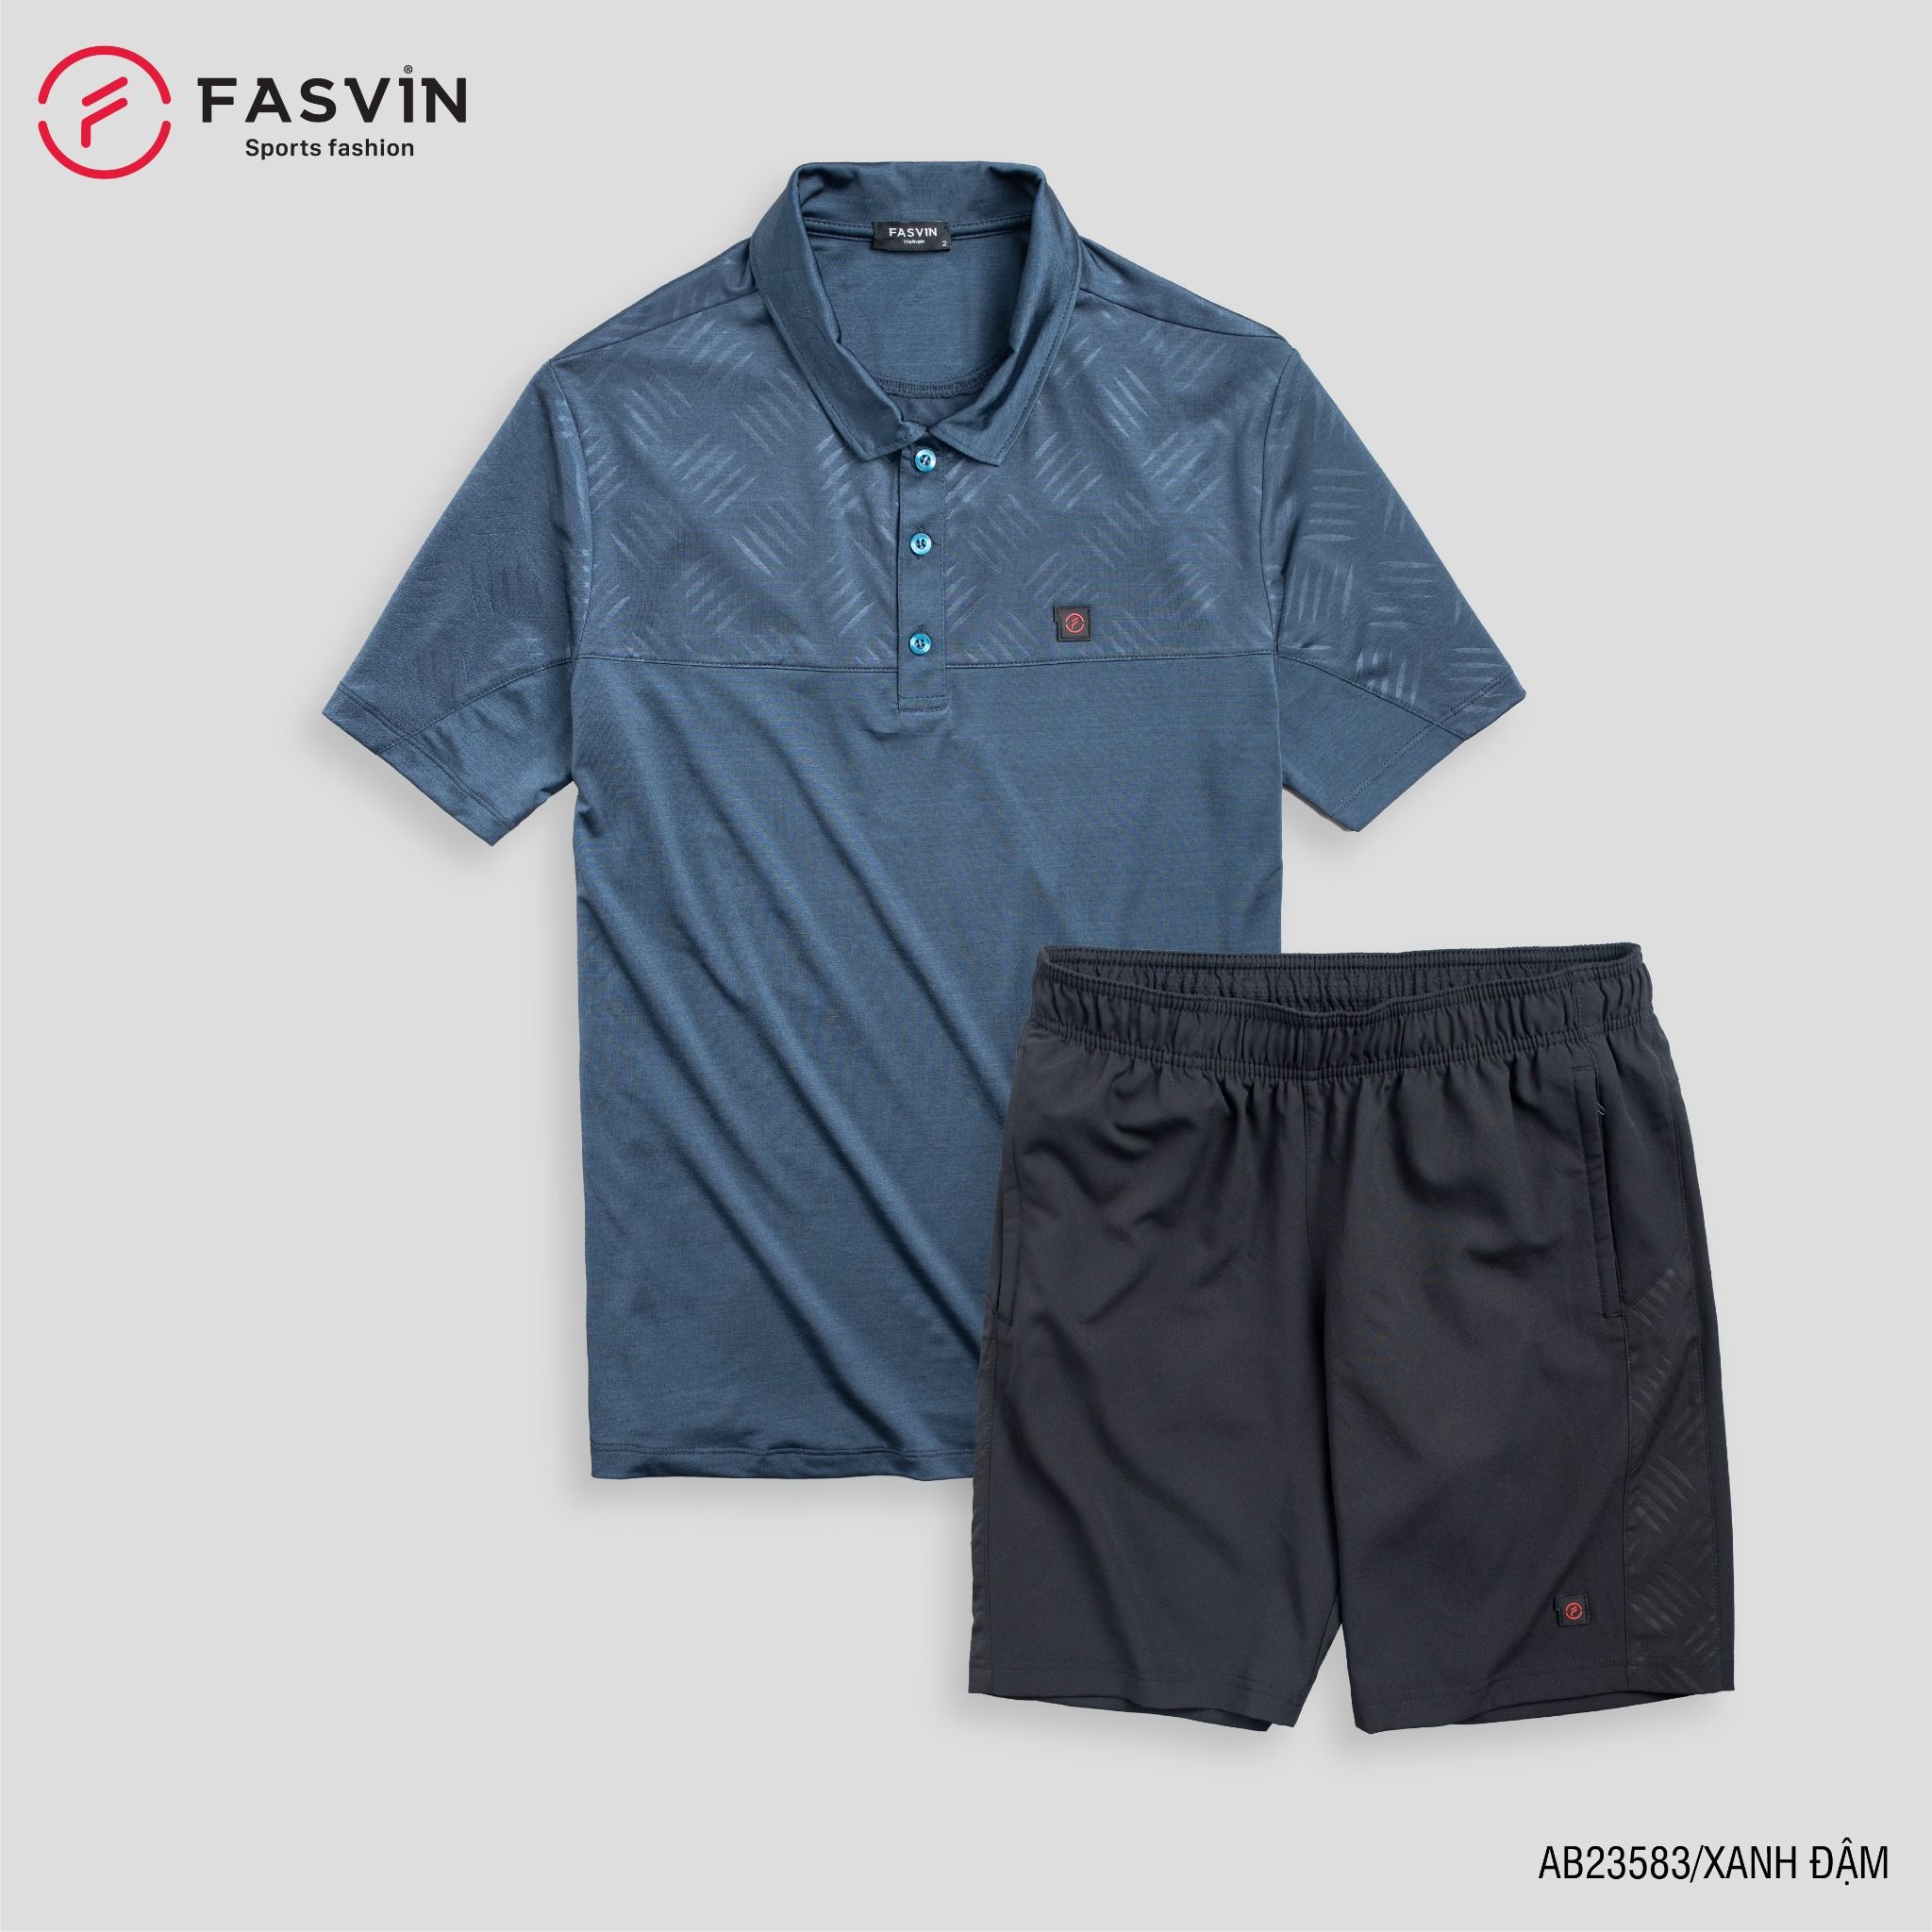  Bộ quần áo thể thao nam FASVIN AB23583 chất vải mềm nhẹ co giãn thoải mái 